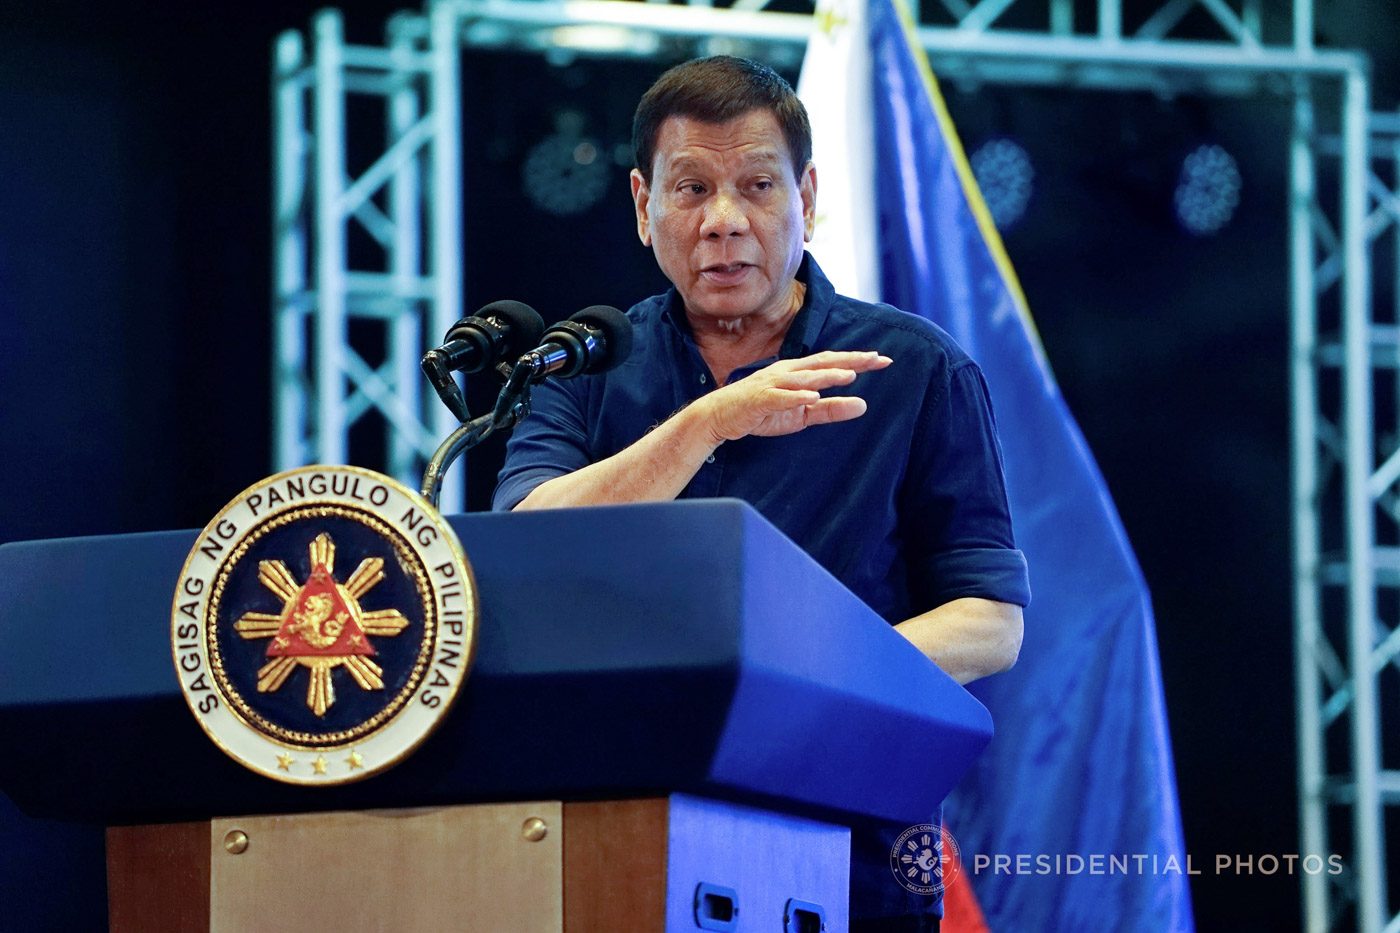 Duterte tells transport group Piston, be ready for rubber bullets